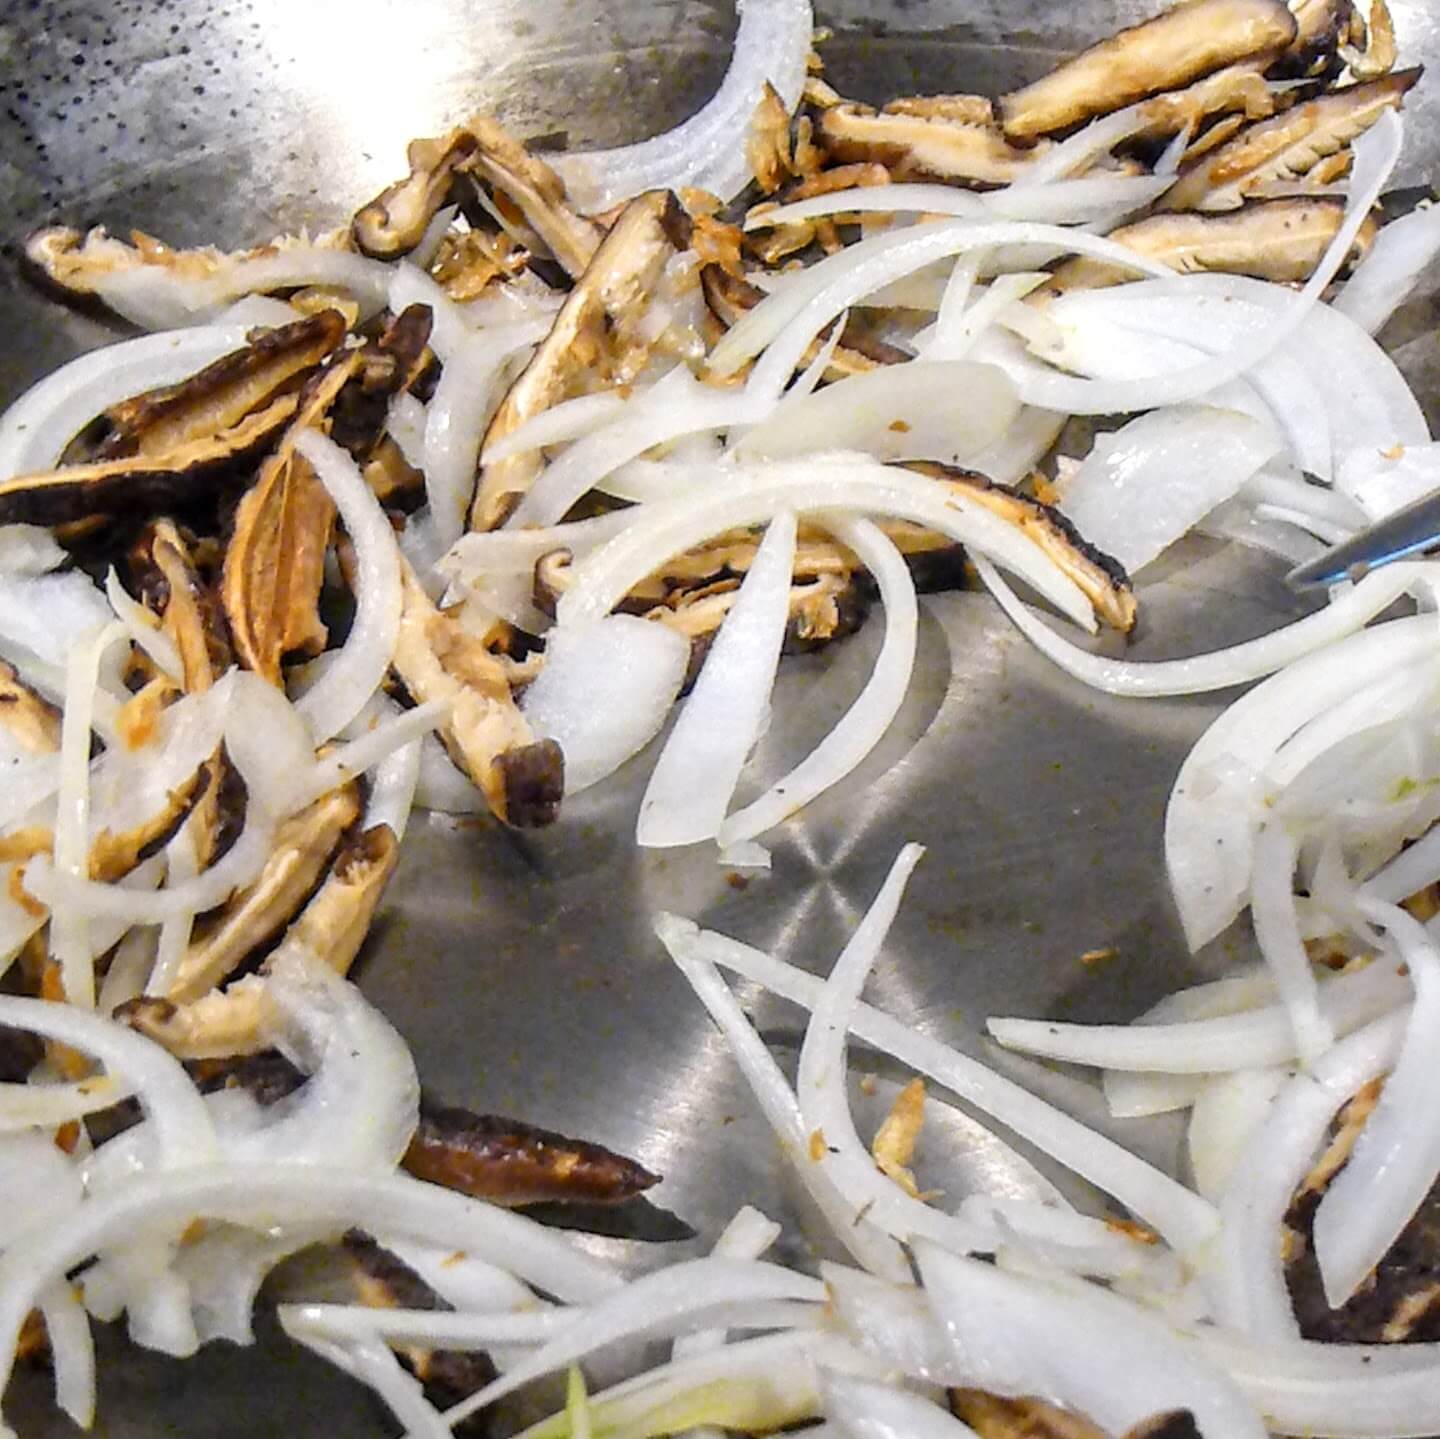 Stir Frying the Shittake Mushroom, Dried Shrimp, and Onion